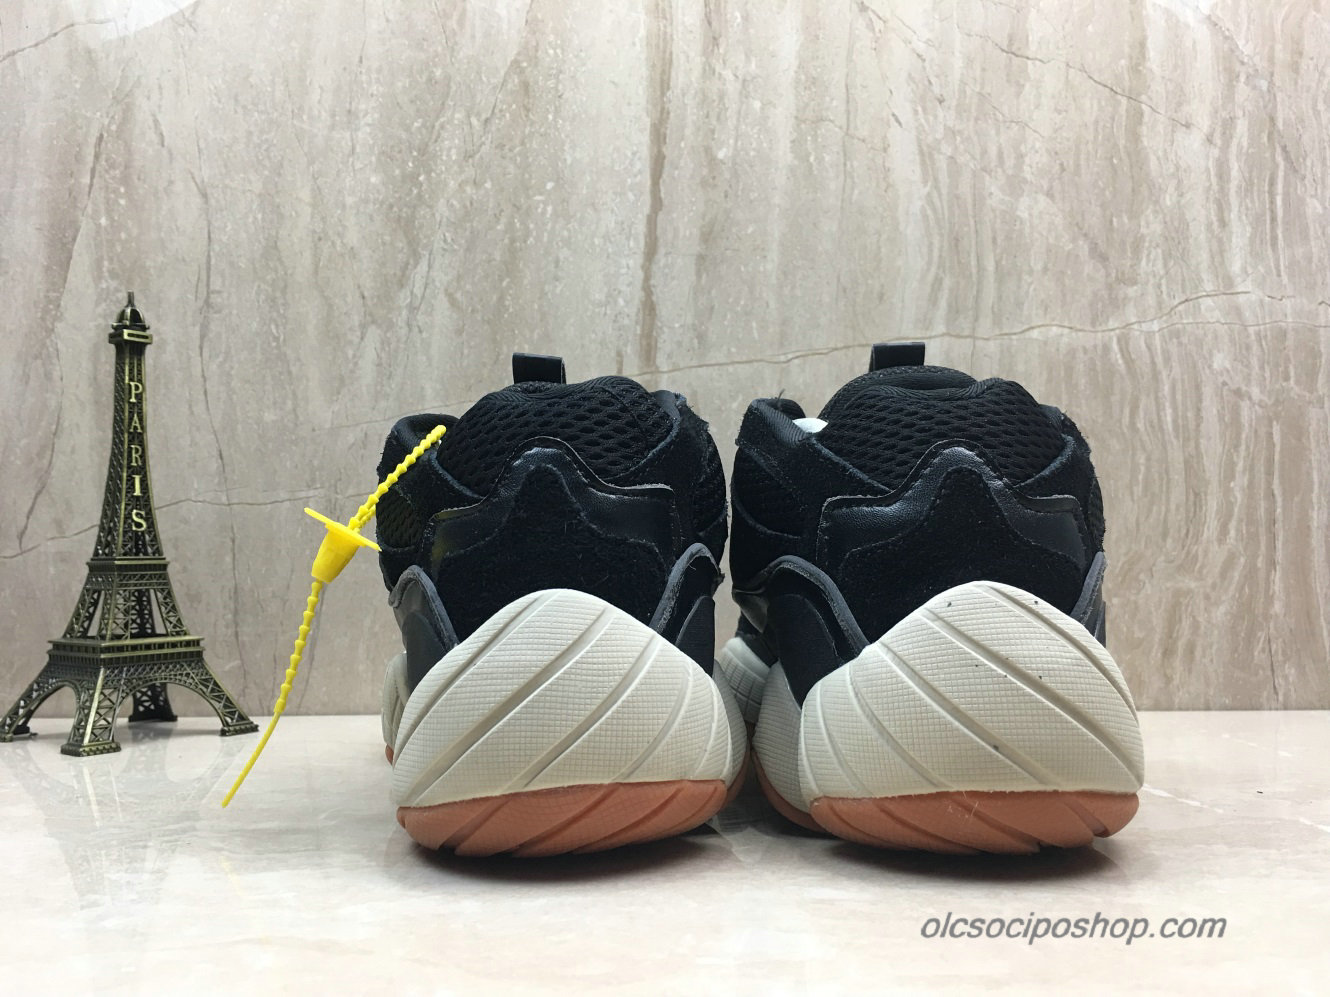 Adidas Yeezy Desert Rat 500 Blush Fekete/Piszkosfehér Cipők (F36680)